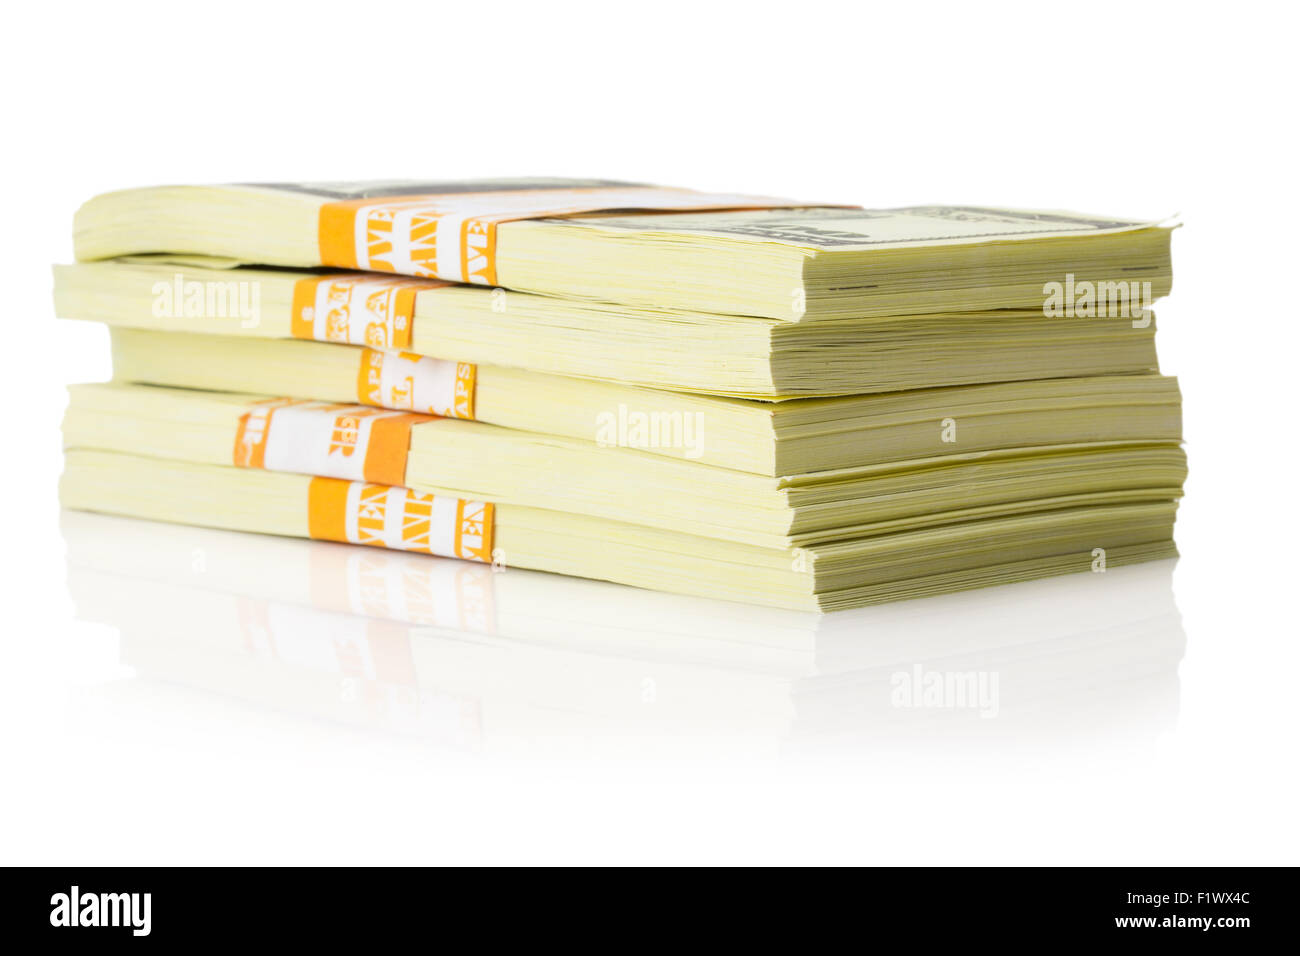 stacks of US dollars bundle isolated on the white background. Stock Photo